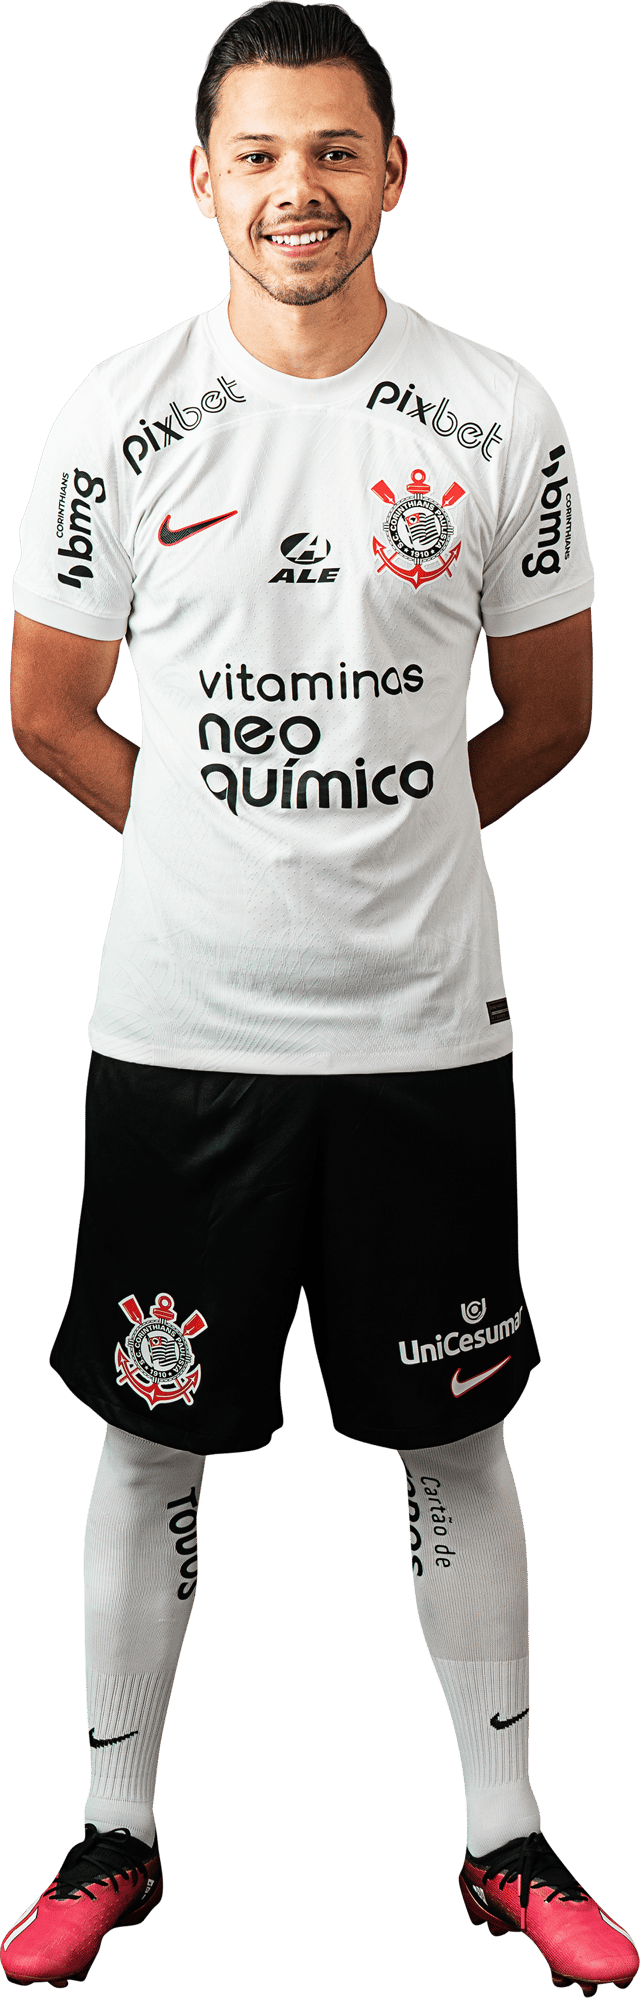 Ángel Romero (footballer) - Wikiwand